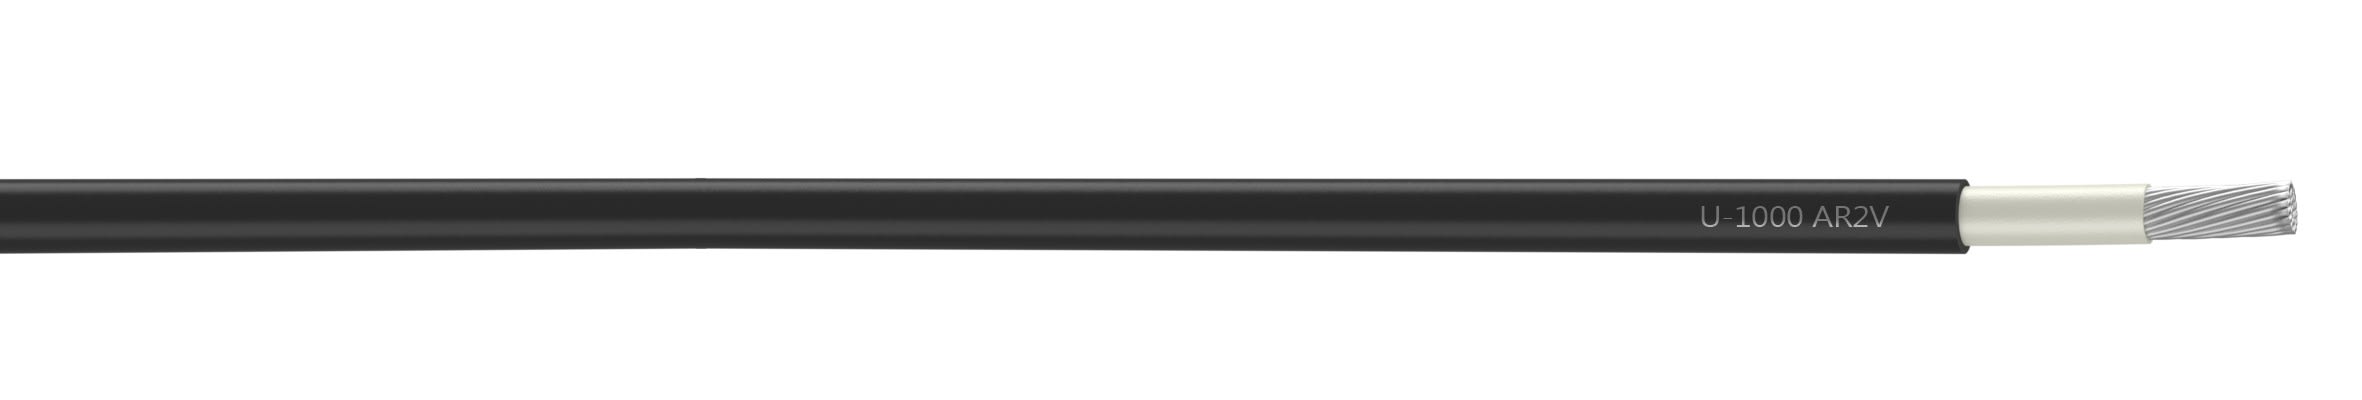 Nexans - Cable rigide U-1000 AR2V aluminium 1x400 longueur a la coupe